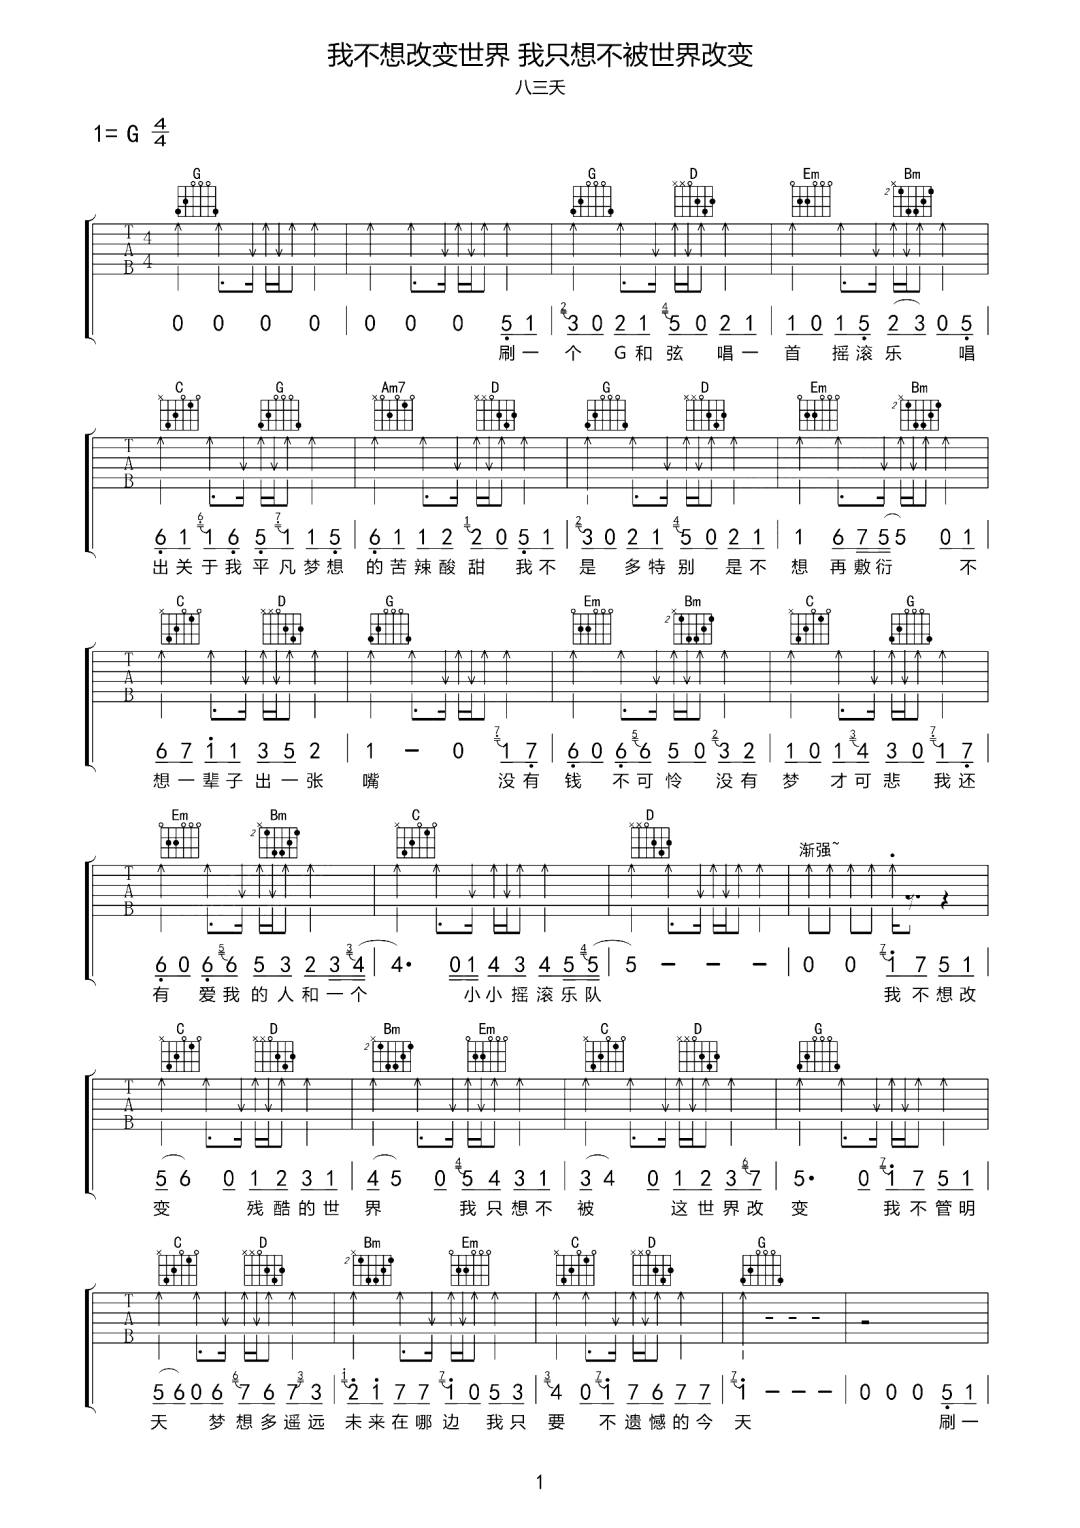 适合吉他初学者弹的歌曲《遇见》G大调/四四拍/分解和弦-吉他曲谱 - 乐器学习网